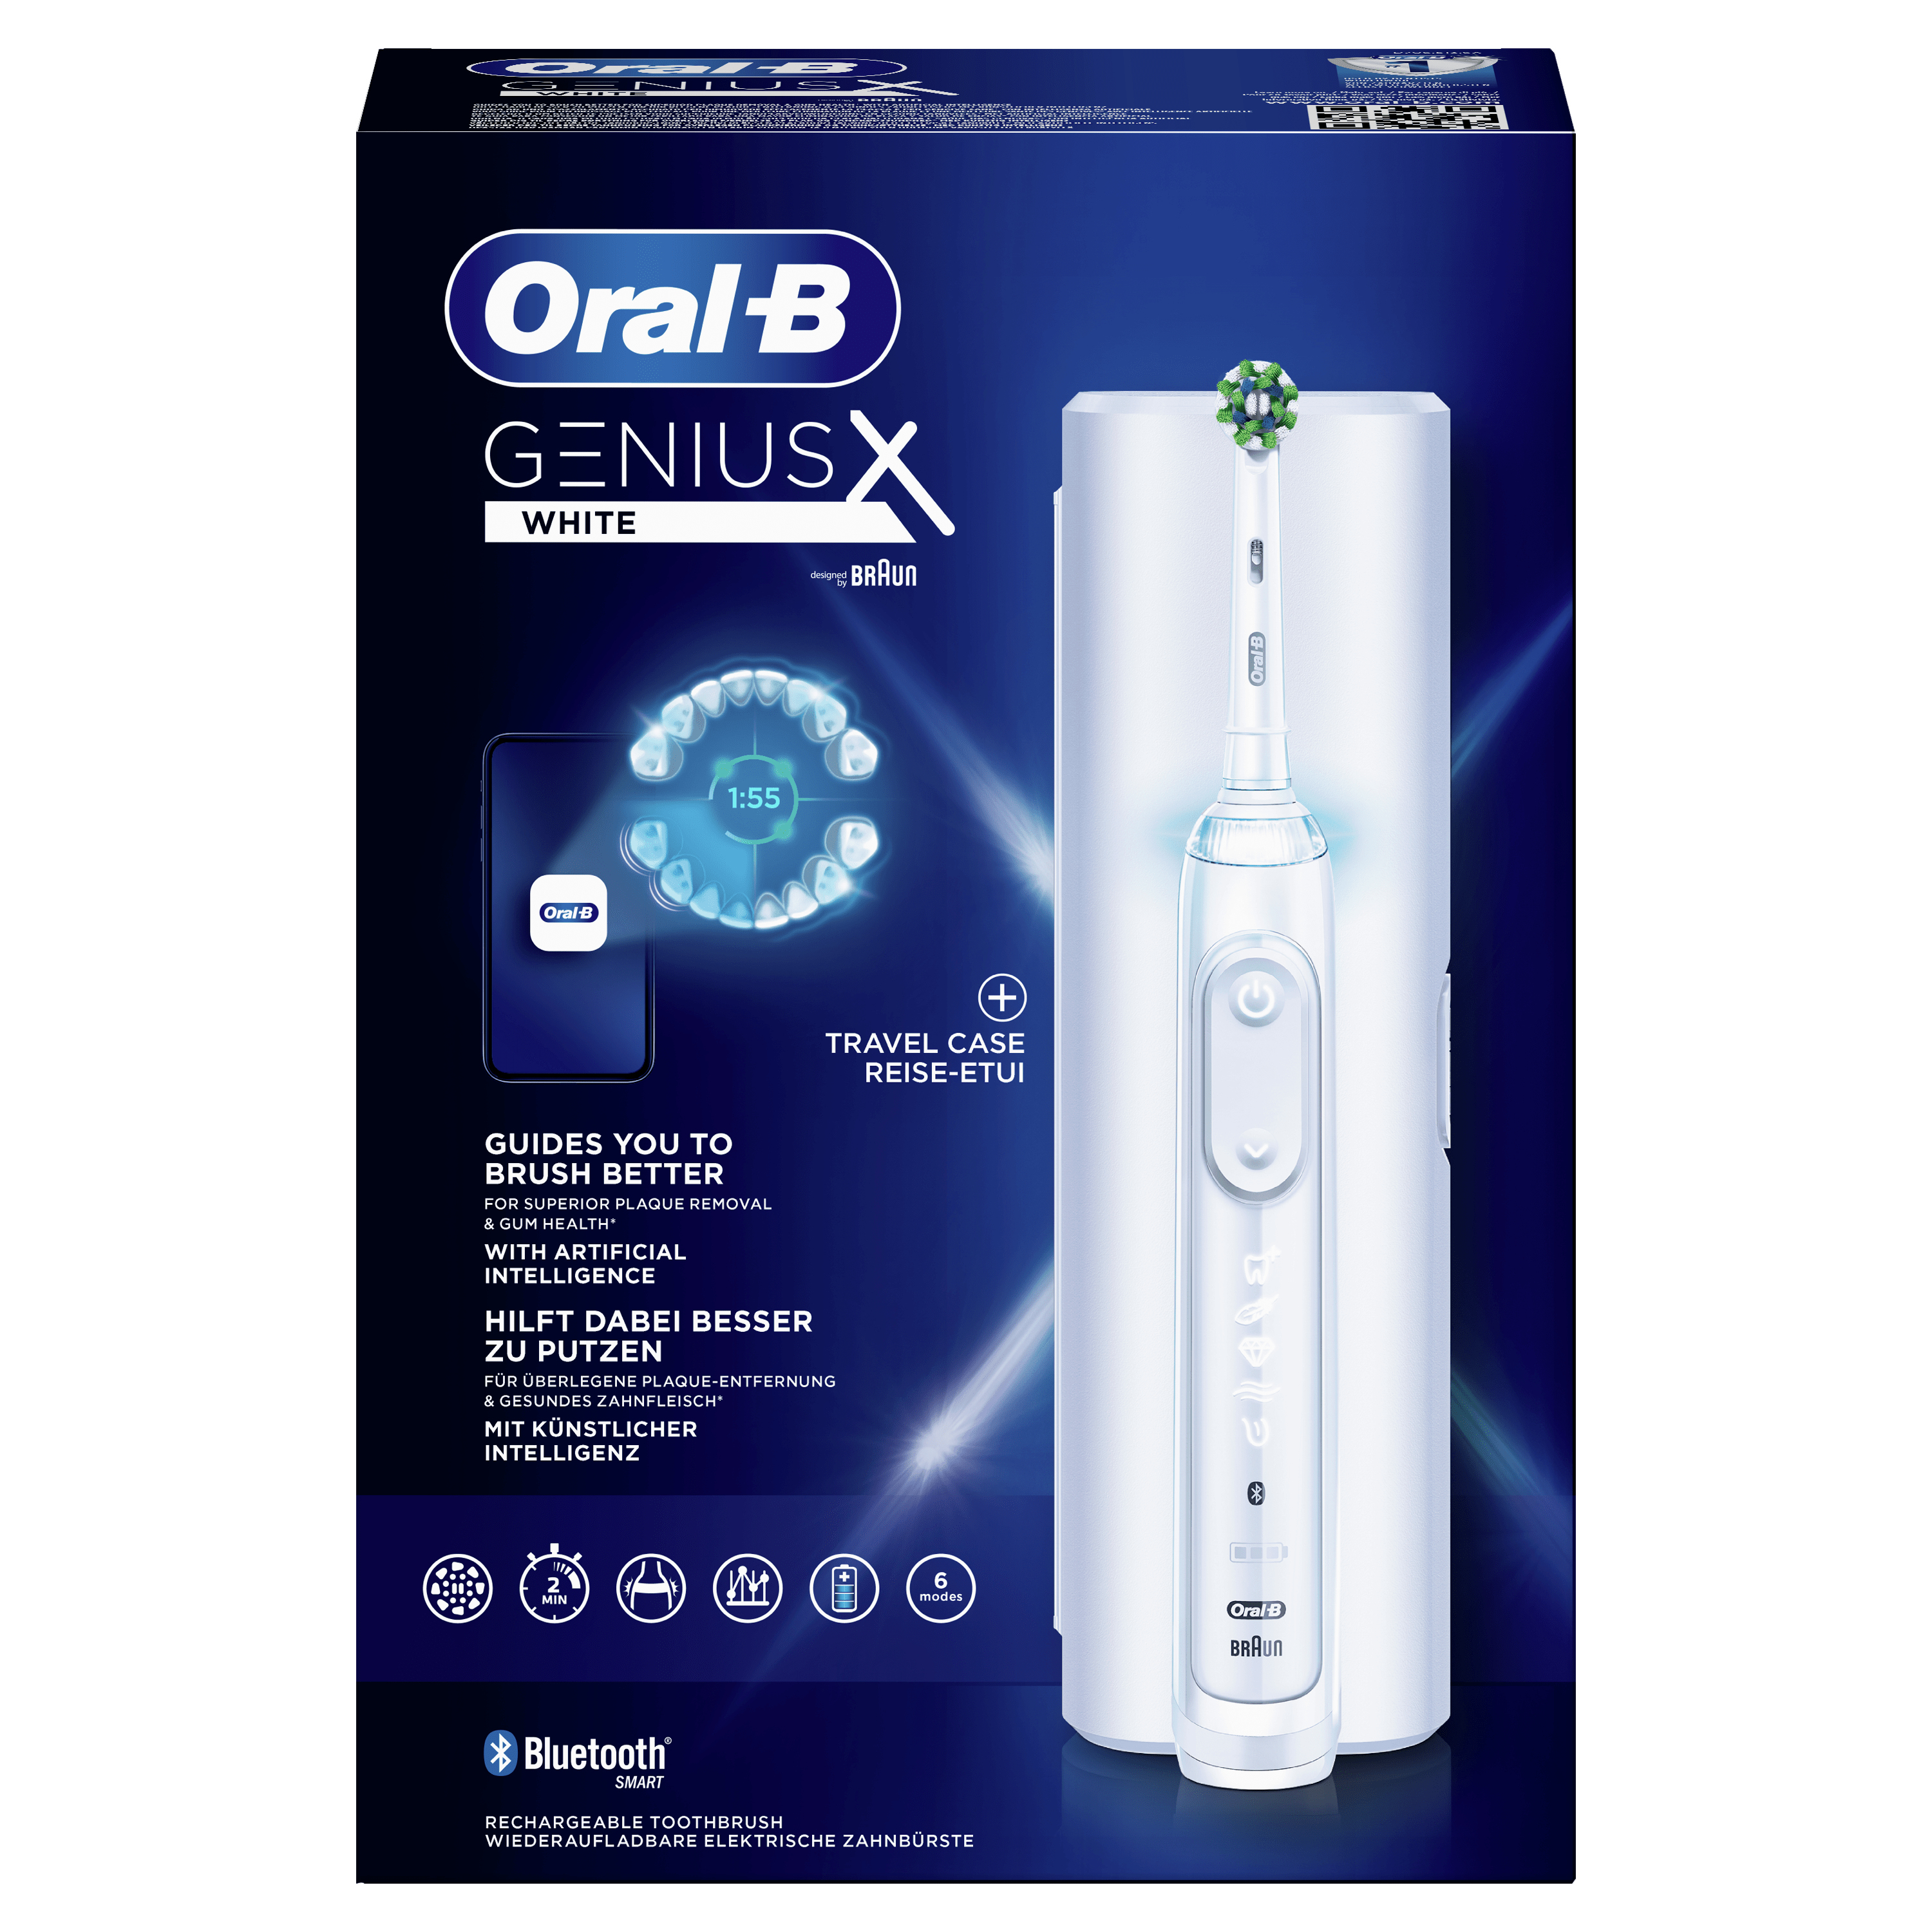 Oral-B Oral-B Genius X Witte Elektrische Tandenborstel Ontworpen Door Braun